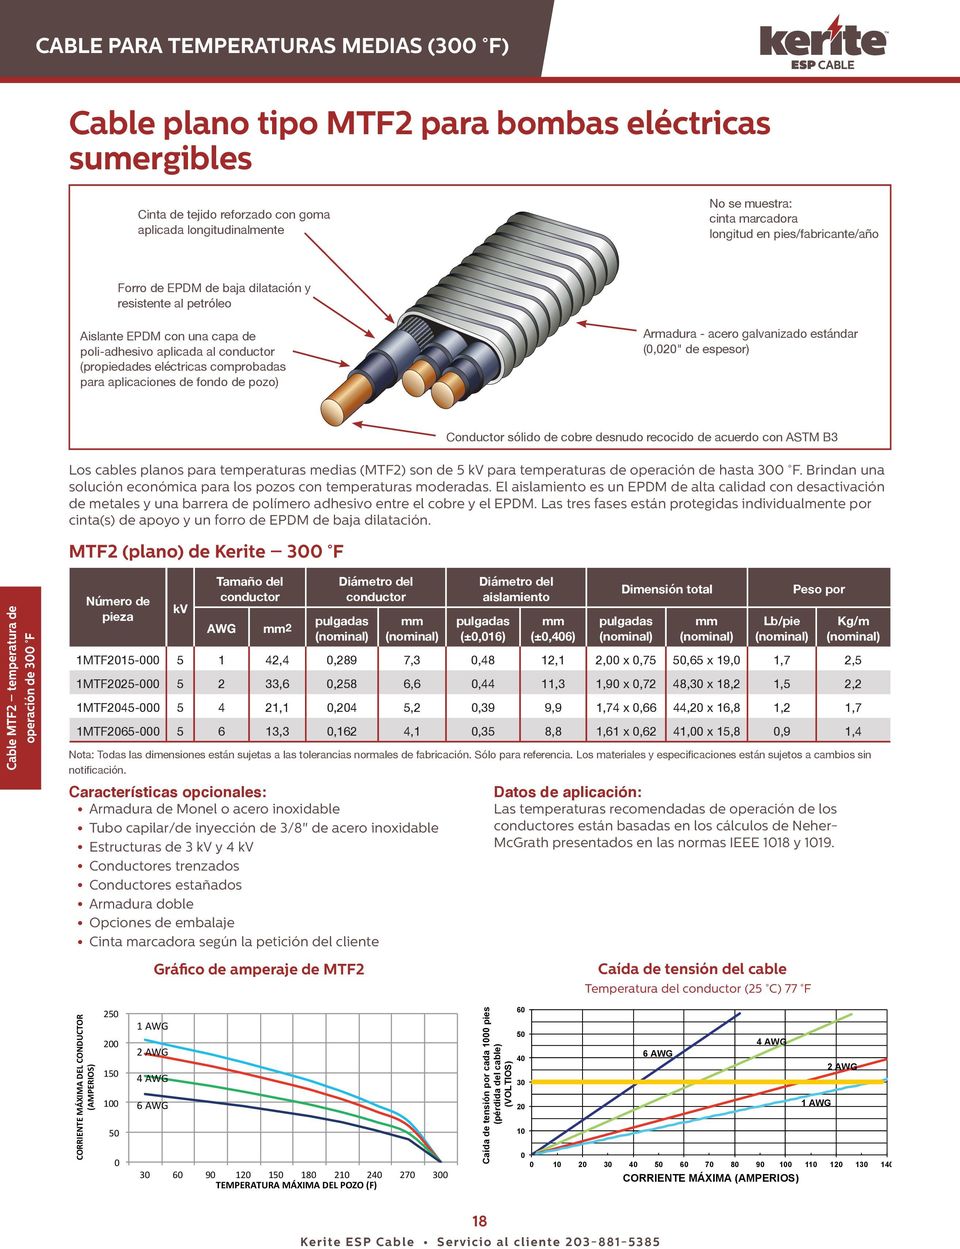 pozo) Armadura - acero galvanizado estándar (,2" de espesor) Los cables planos para temperaturas medias (MTF2) son de 5 kv para temperaturas de operación de hasta 3 F.